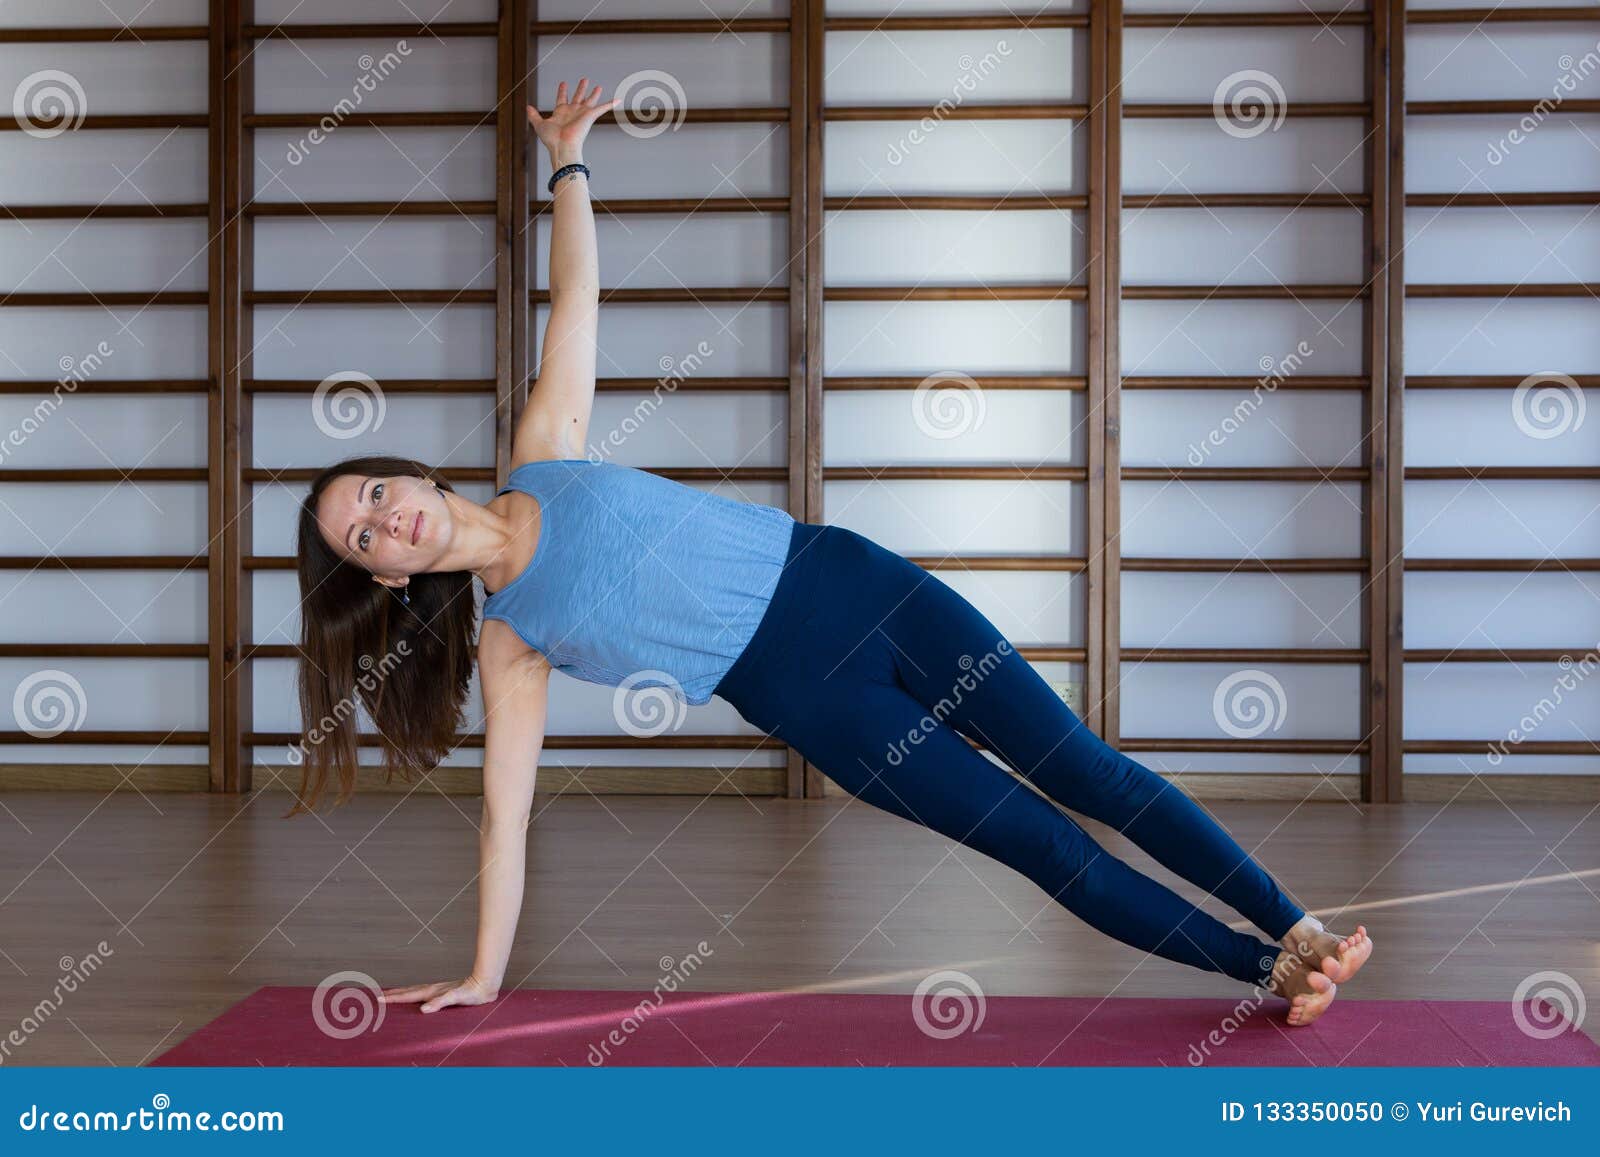 https://thumbs.dreamstime.com/z/ropa-de-deportes-blanca-que-lleva-la-mujer-bonita-tranquila-joven-se-resuelve-haciendo-ejercicio-yoga-o-los-pilates-aislado-en-el-133350050.jpg